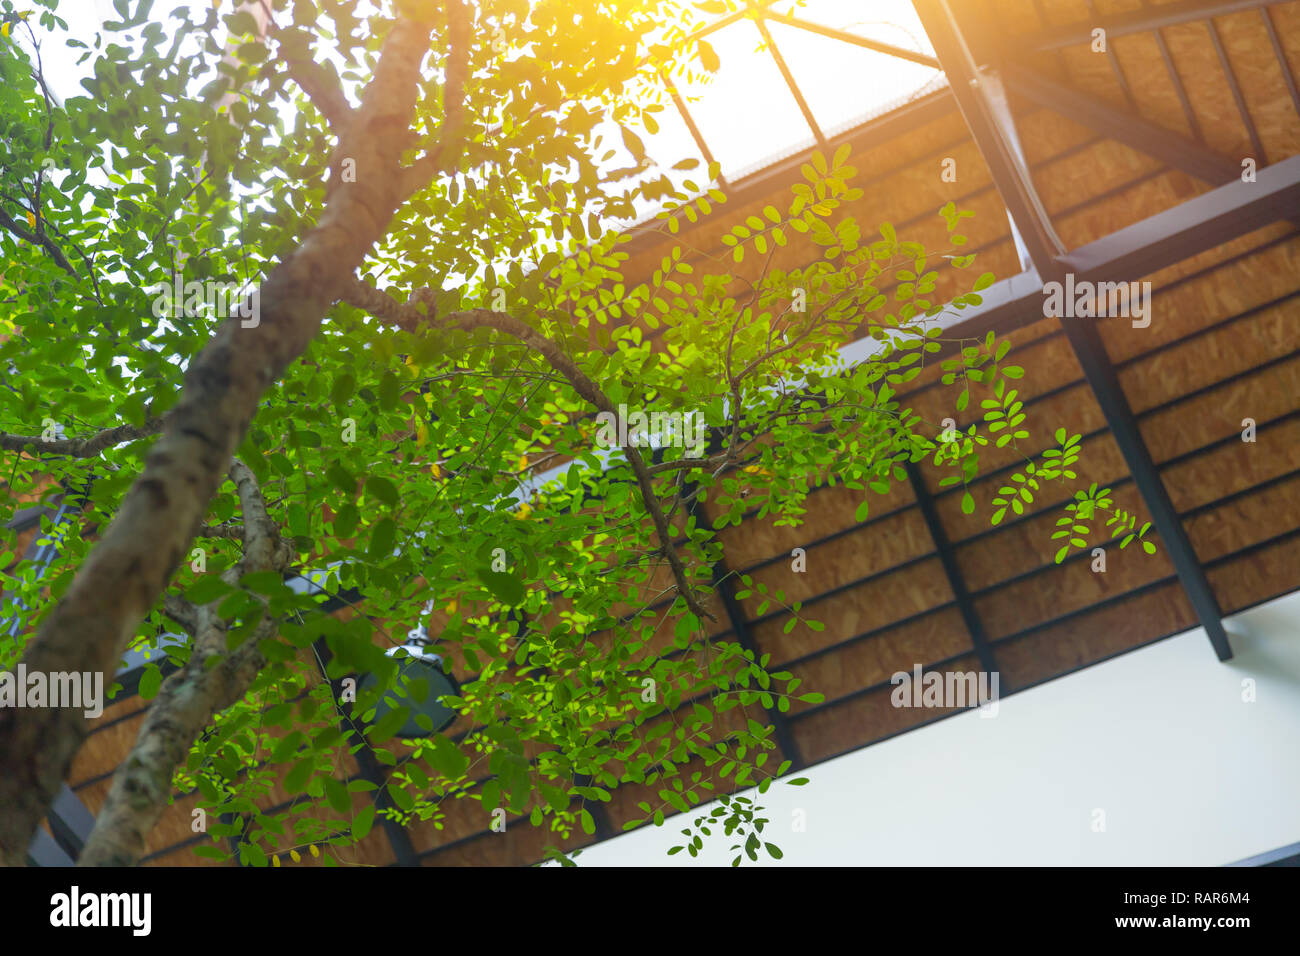 Piscina albero verde eco casa e ufficio impianto interno per raffreddare l'aria fresca. Foto Stock